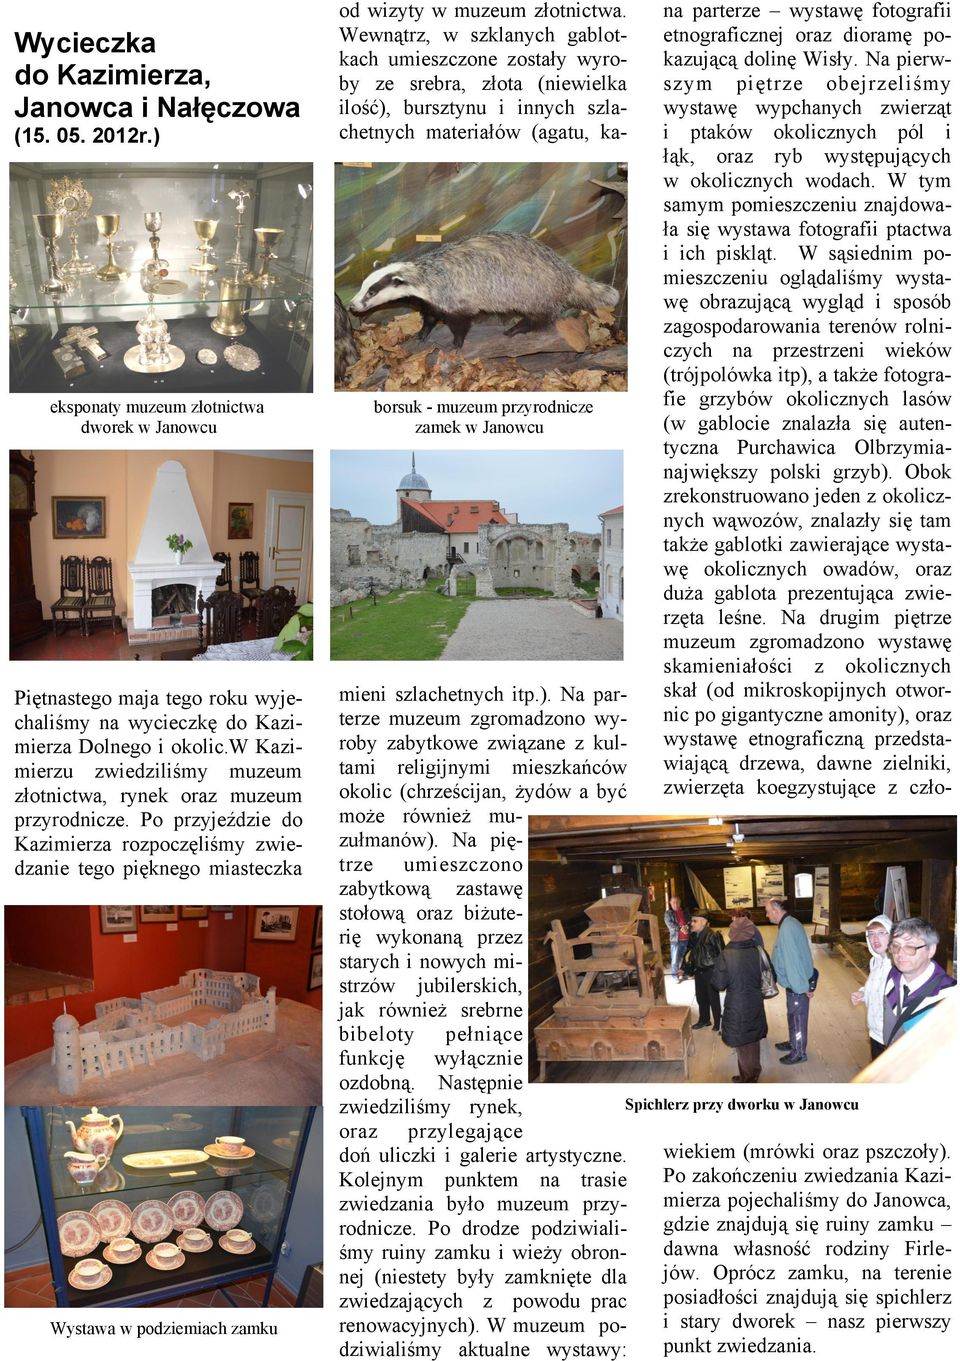 Po przyjeździe do Kazimierza rozpoczęliśmy zwiedzanie tego pięknego miasteczka Wystawa w podziemiach zamku od wizyty w muzeum złotnictwa.